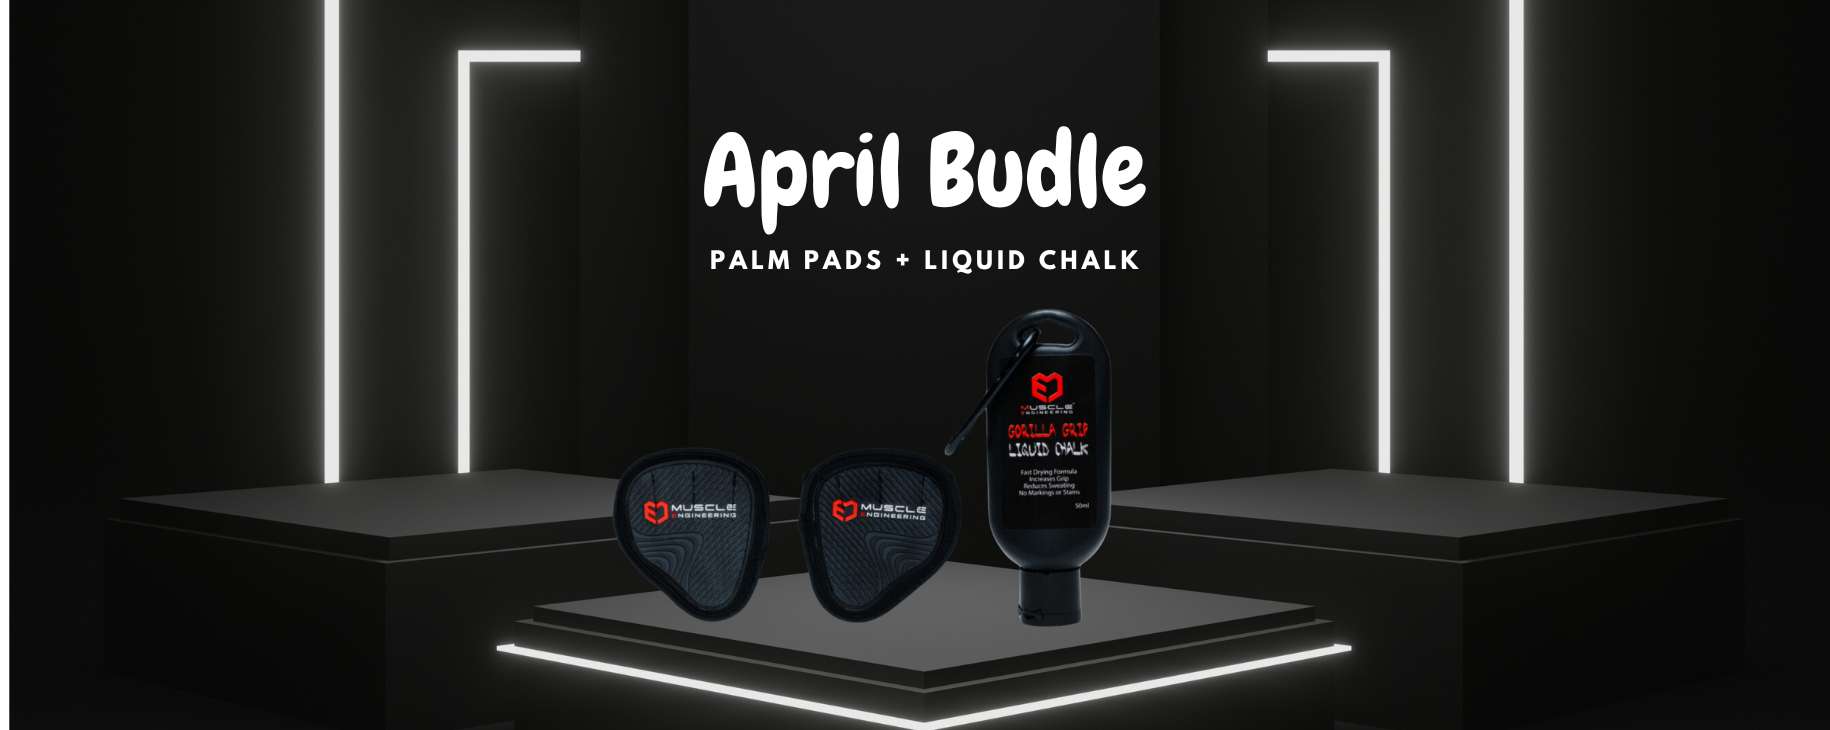 Gorilla Grip Palm Pads with Liquid Chalk April Bundle